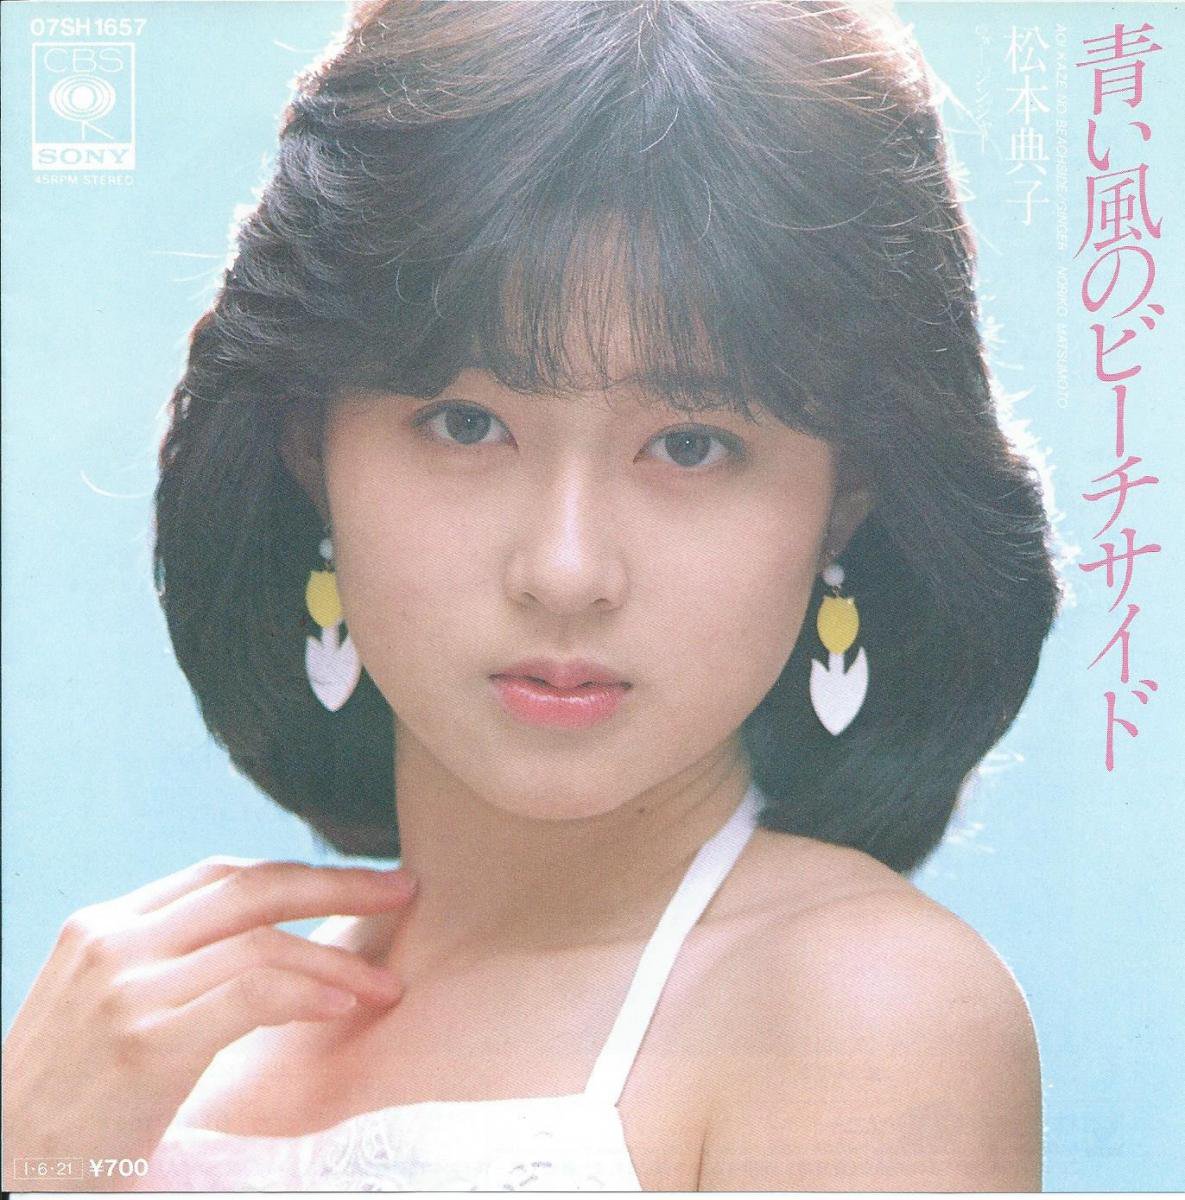 松本典子 Noriko Matsumoto 青い風のビーチサイド ジンジャー 矢野顕子 Akiko Yano 7 Hip Tank Records